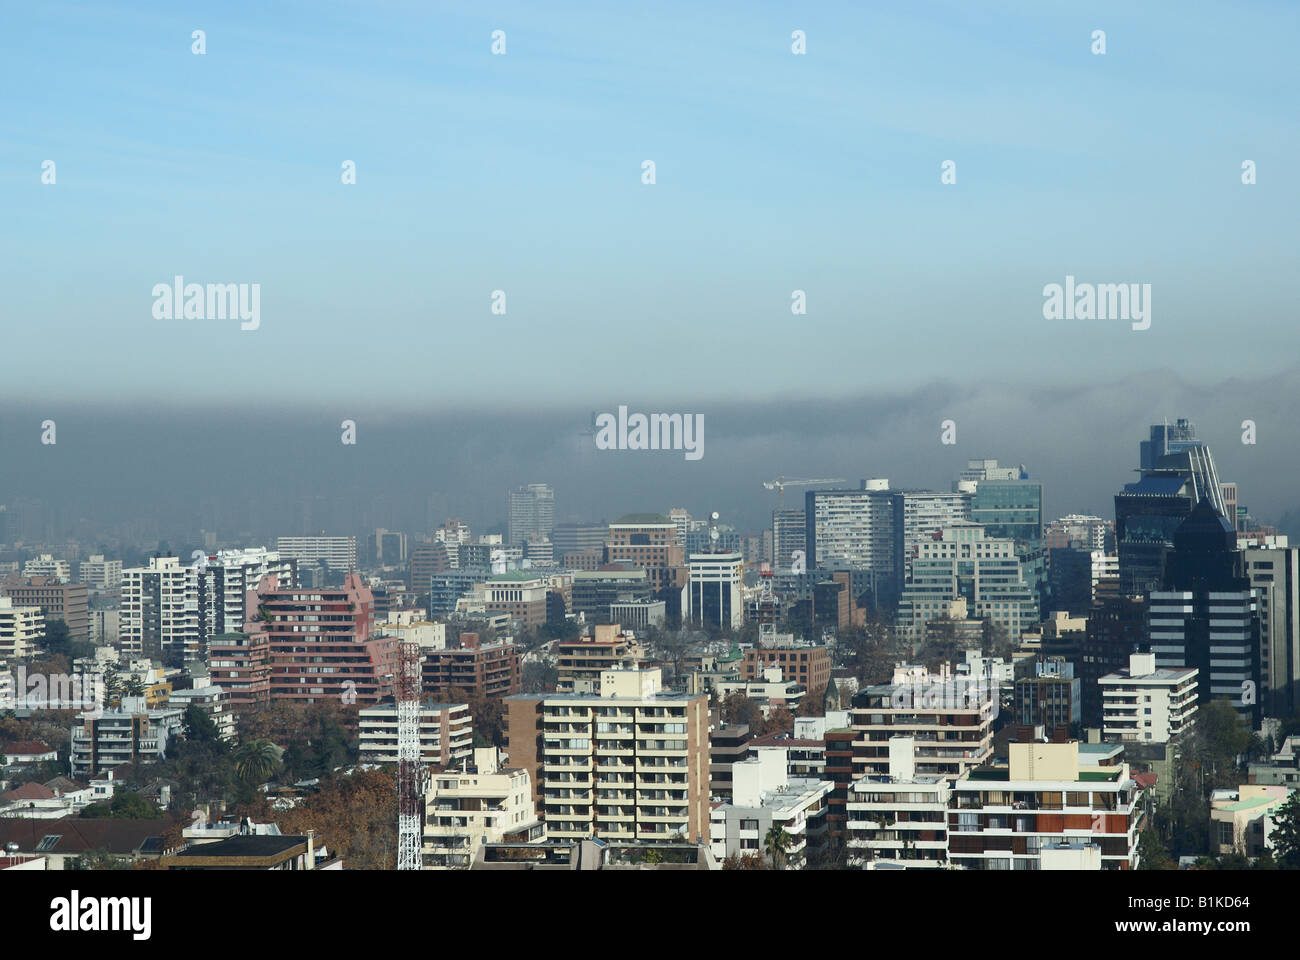 Una spessa coltre di smog incombe sulla centrale di Santiago del Cile. Questo tipo di inquinamento atmosferico è tipico dei mesi invernali. Foto Stock